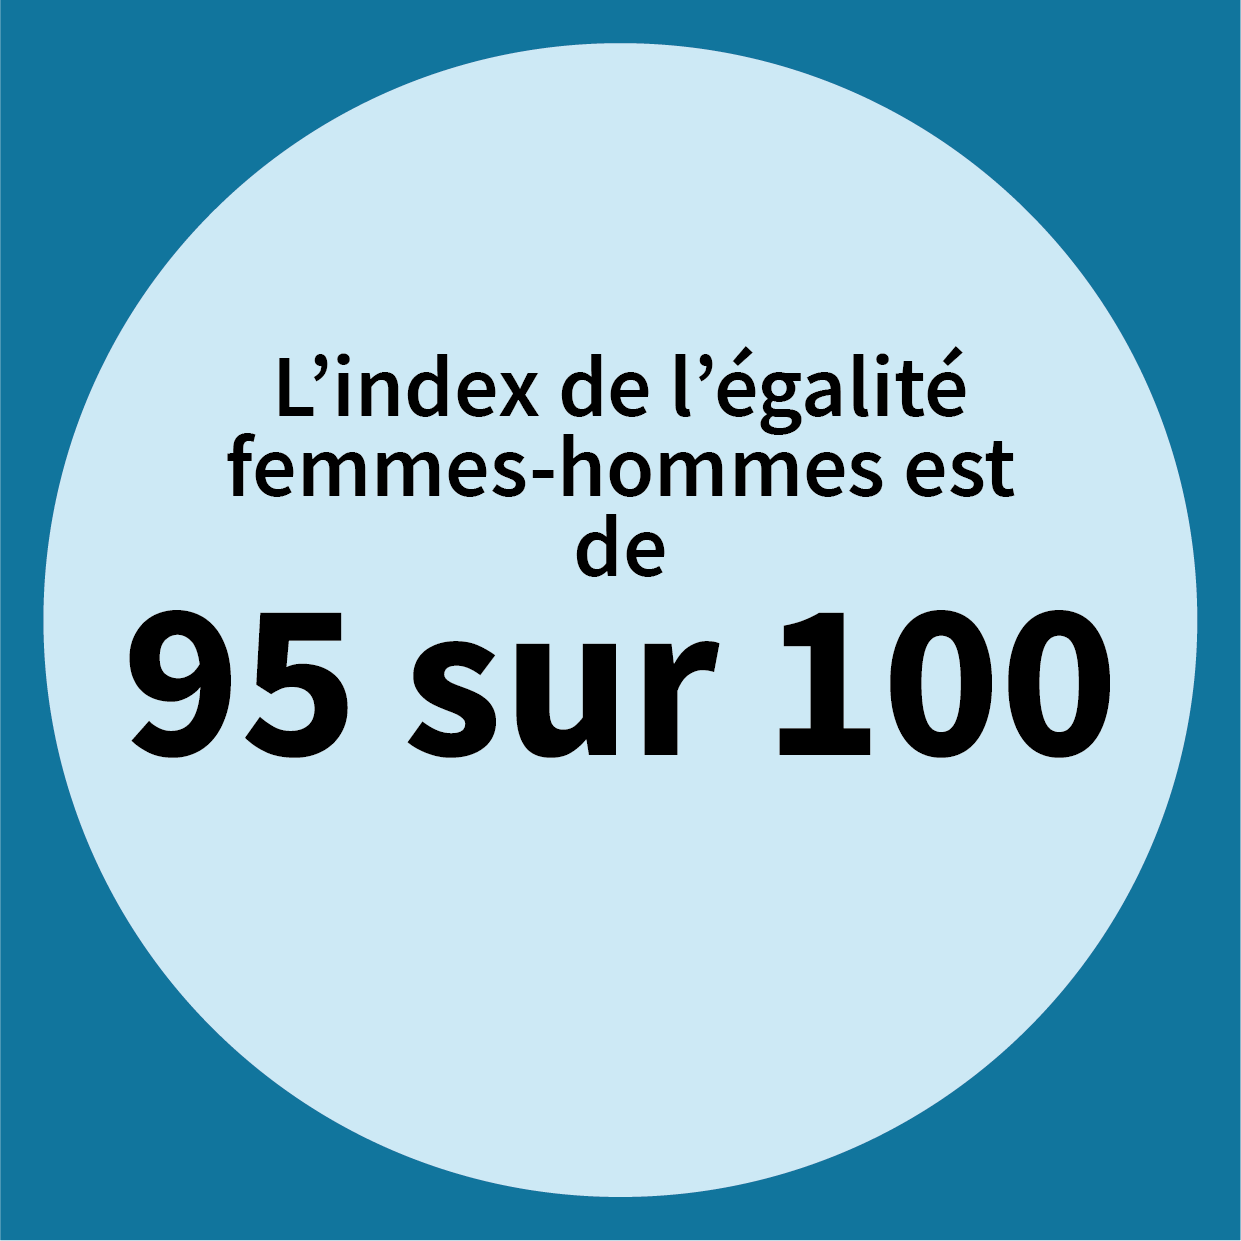 L'index de l'égalité femmes-hommes est de 95 sur 100